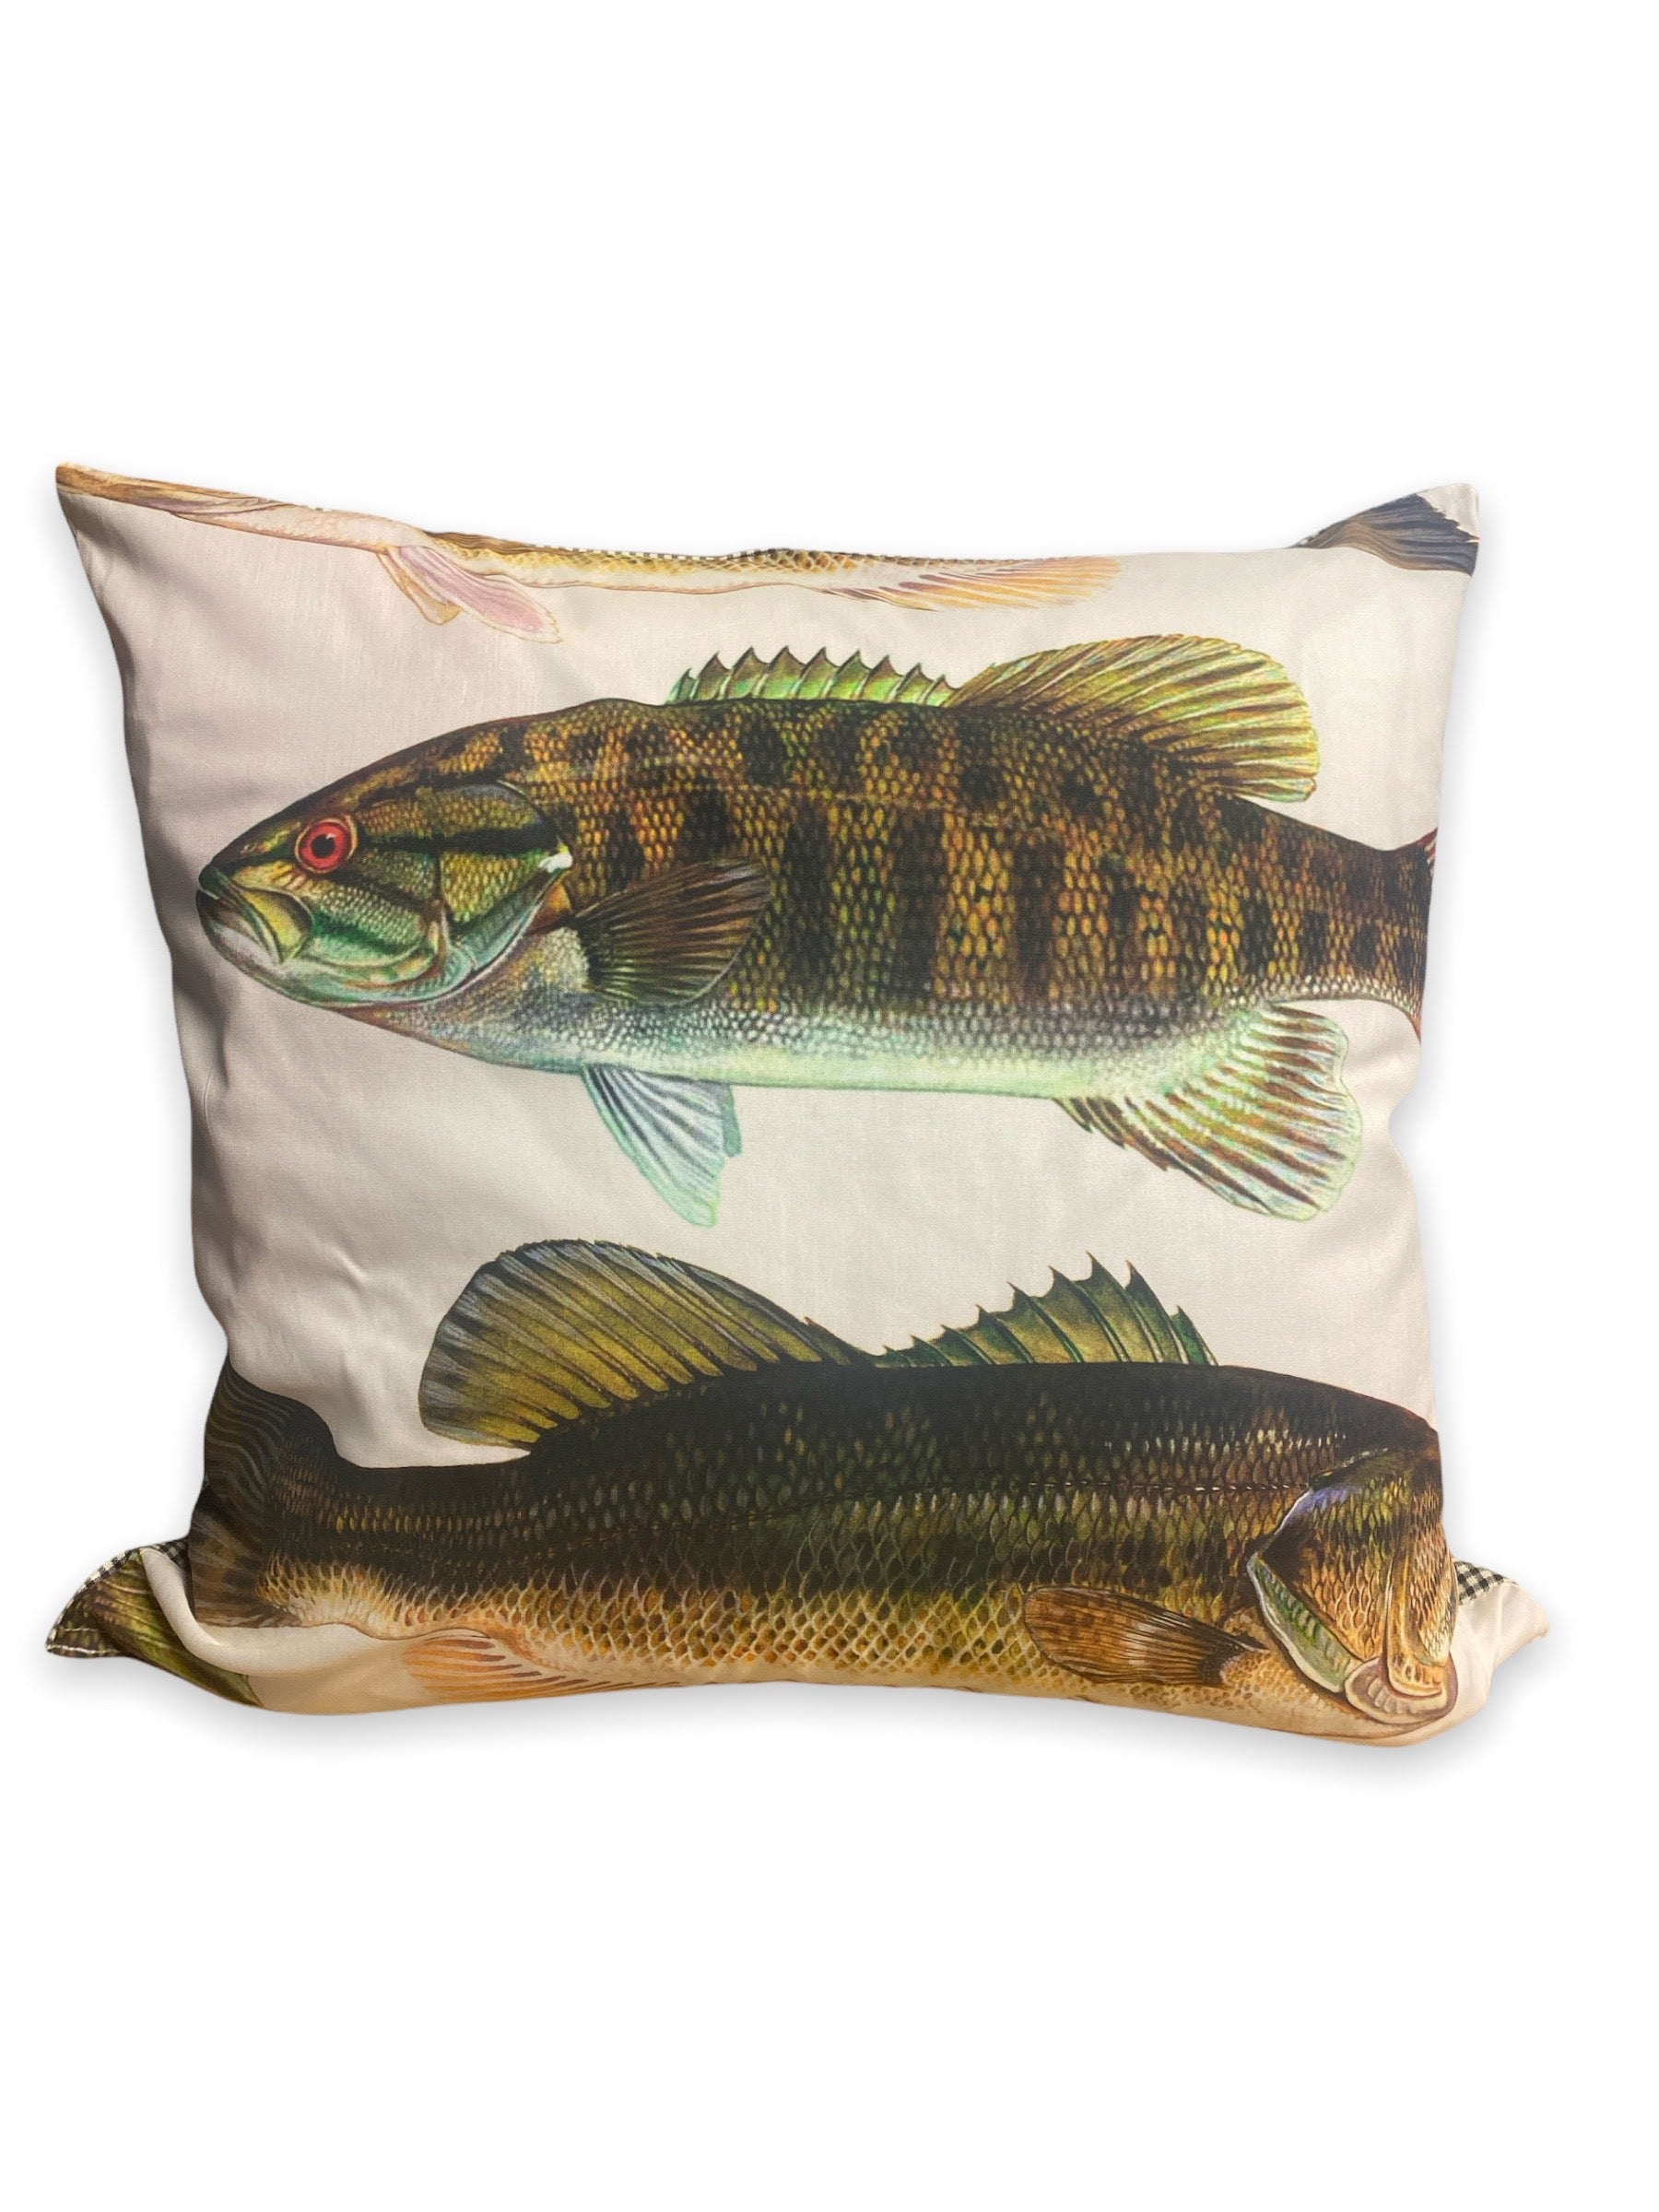 big fish pillows inrugco